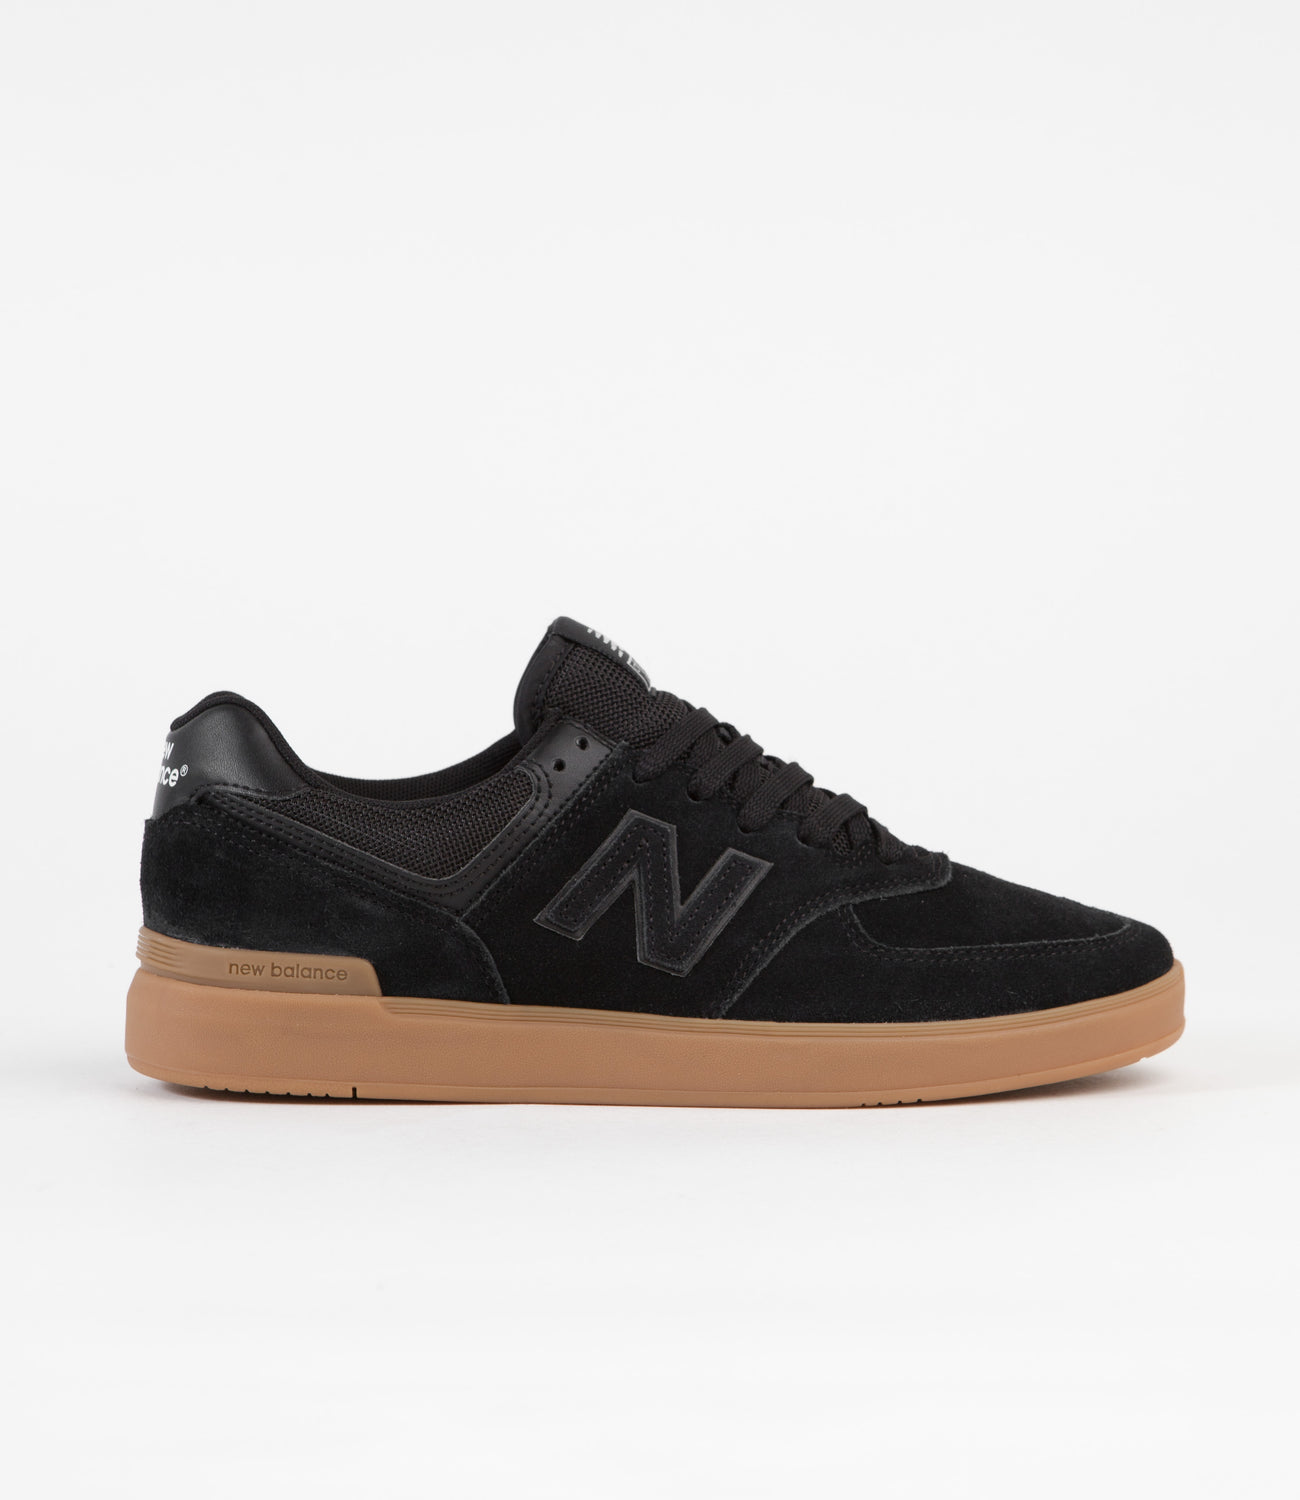 New Balance Pro Court 574 Shoes - Black / Gum | Flatspot